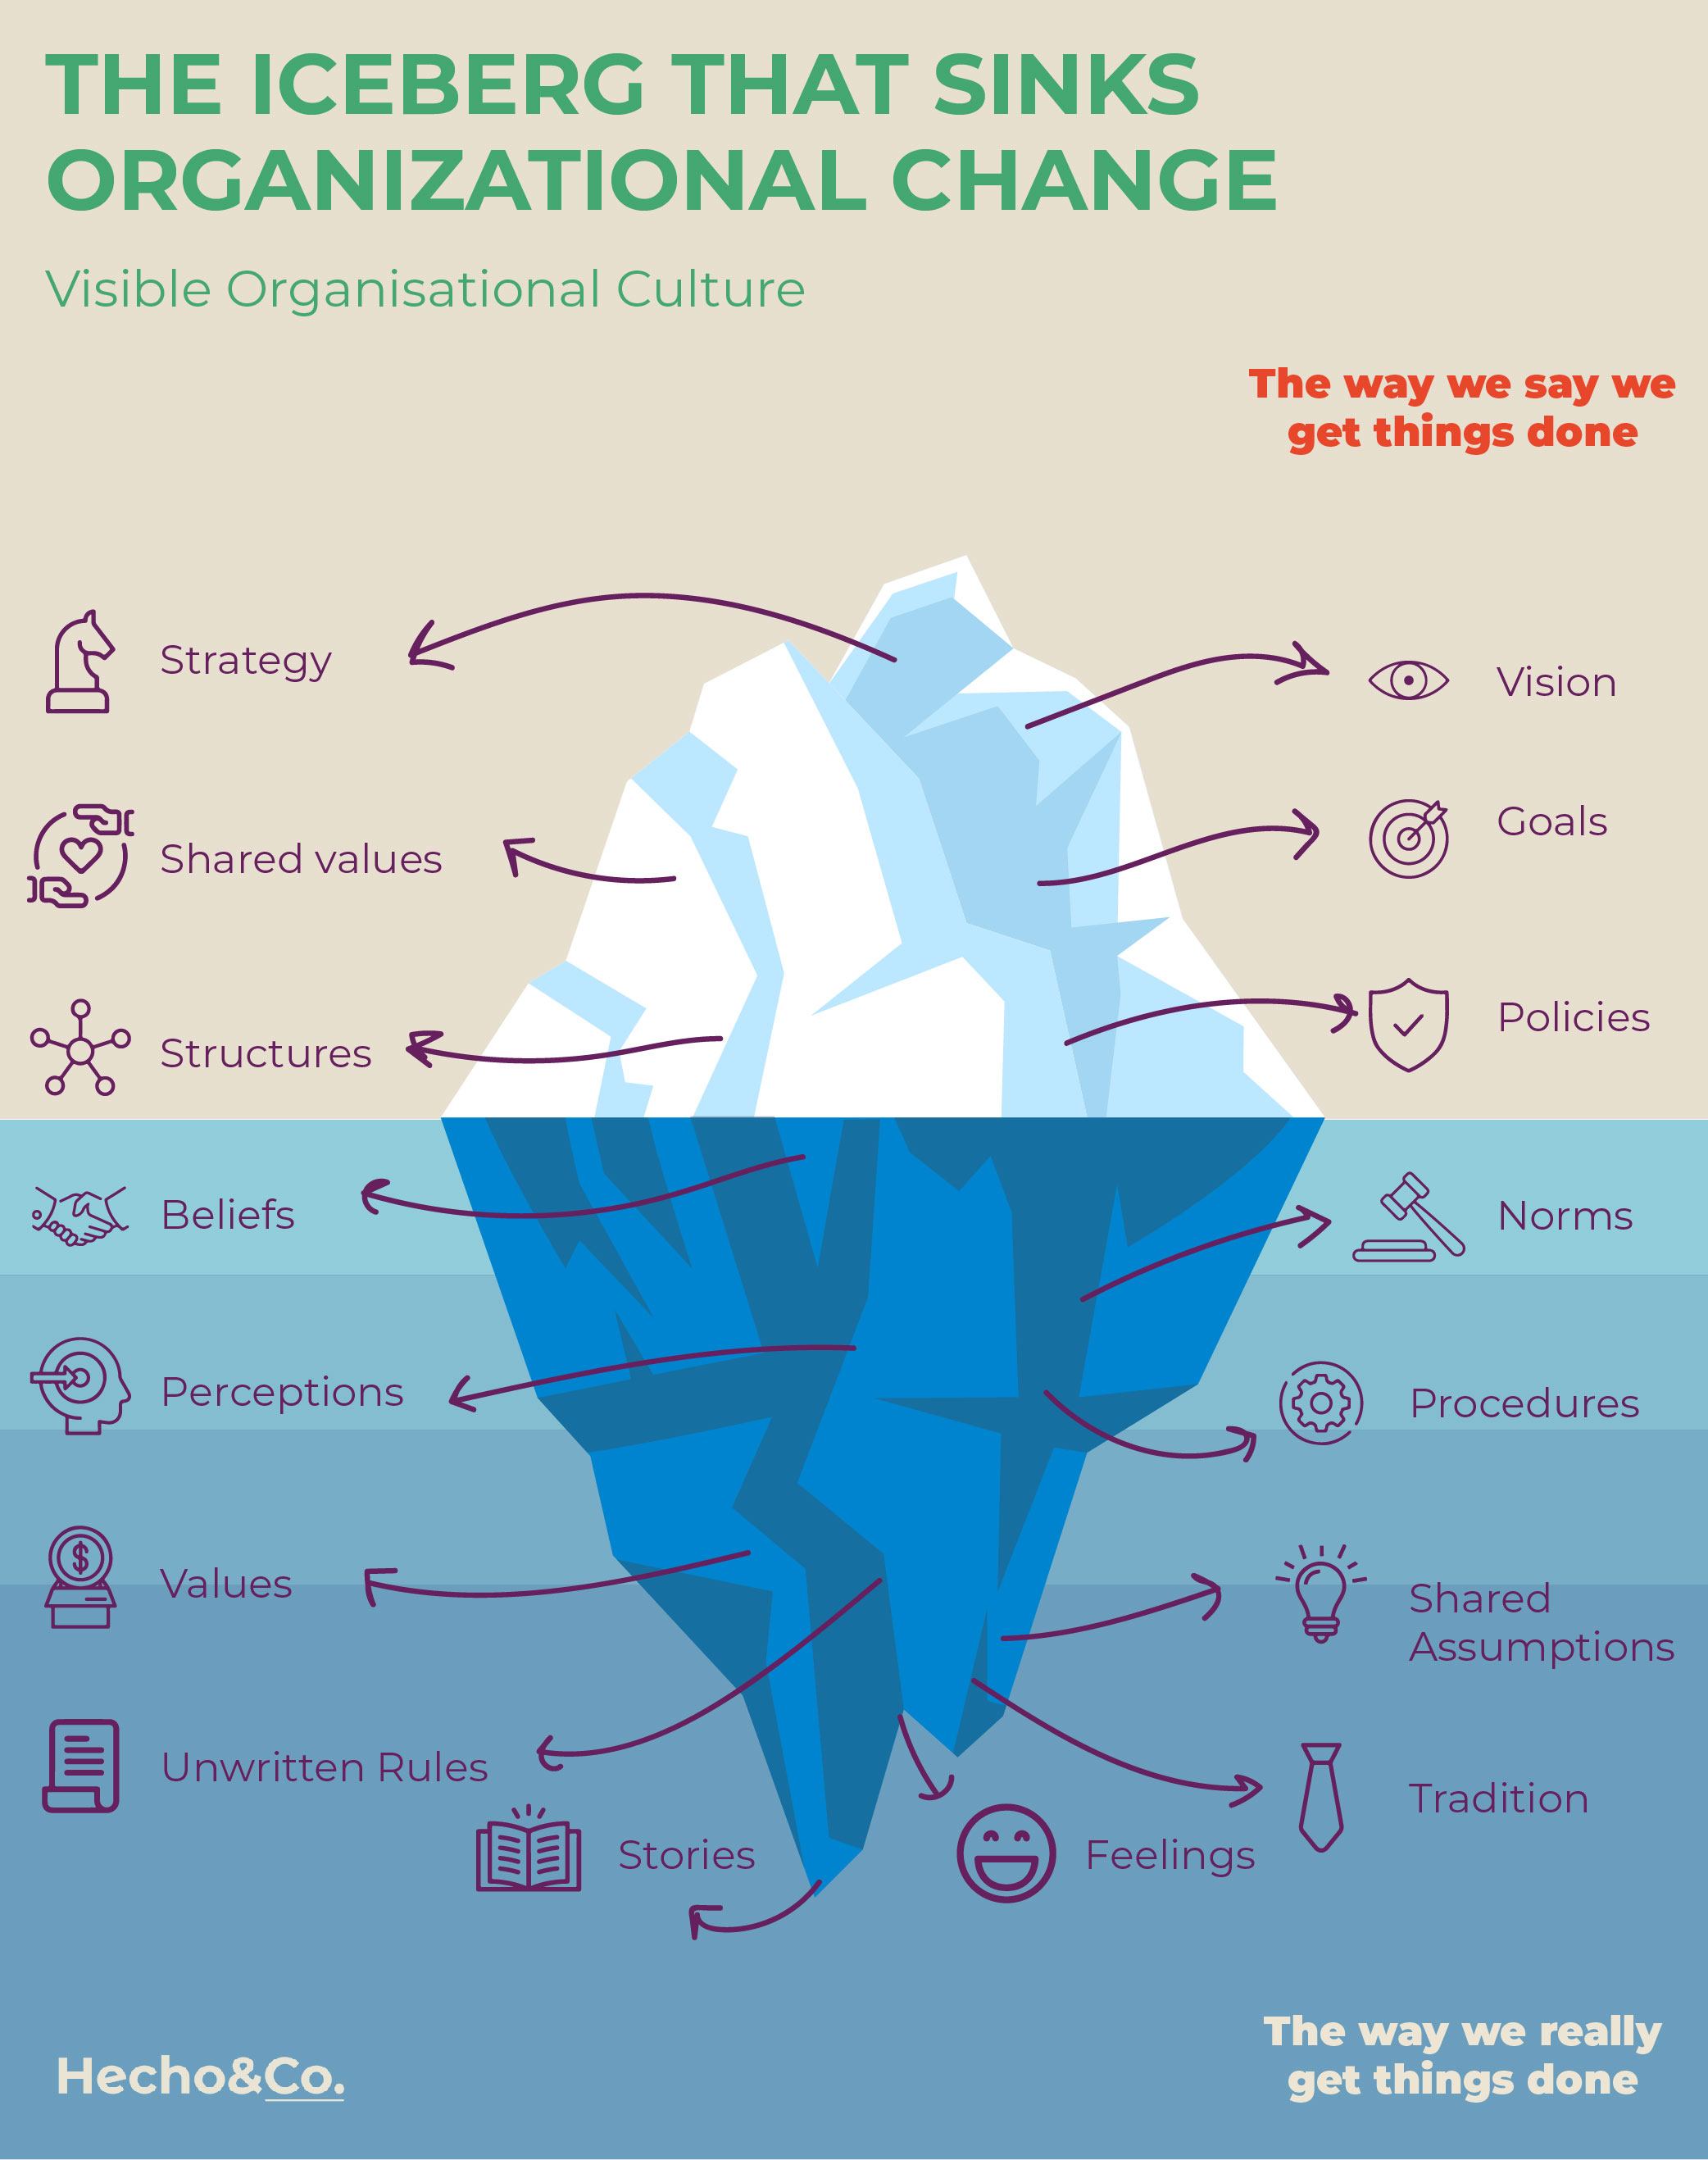 La cultura organizacional del Iceberg